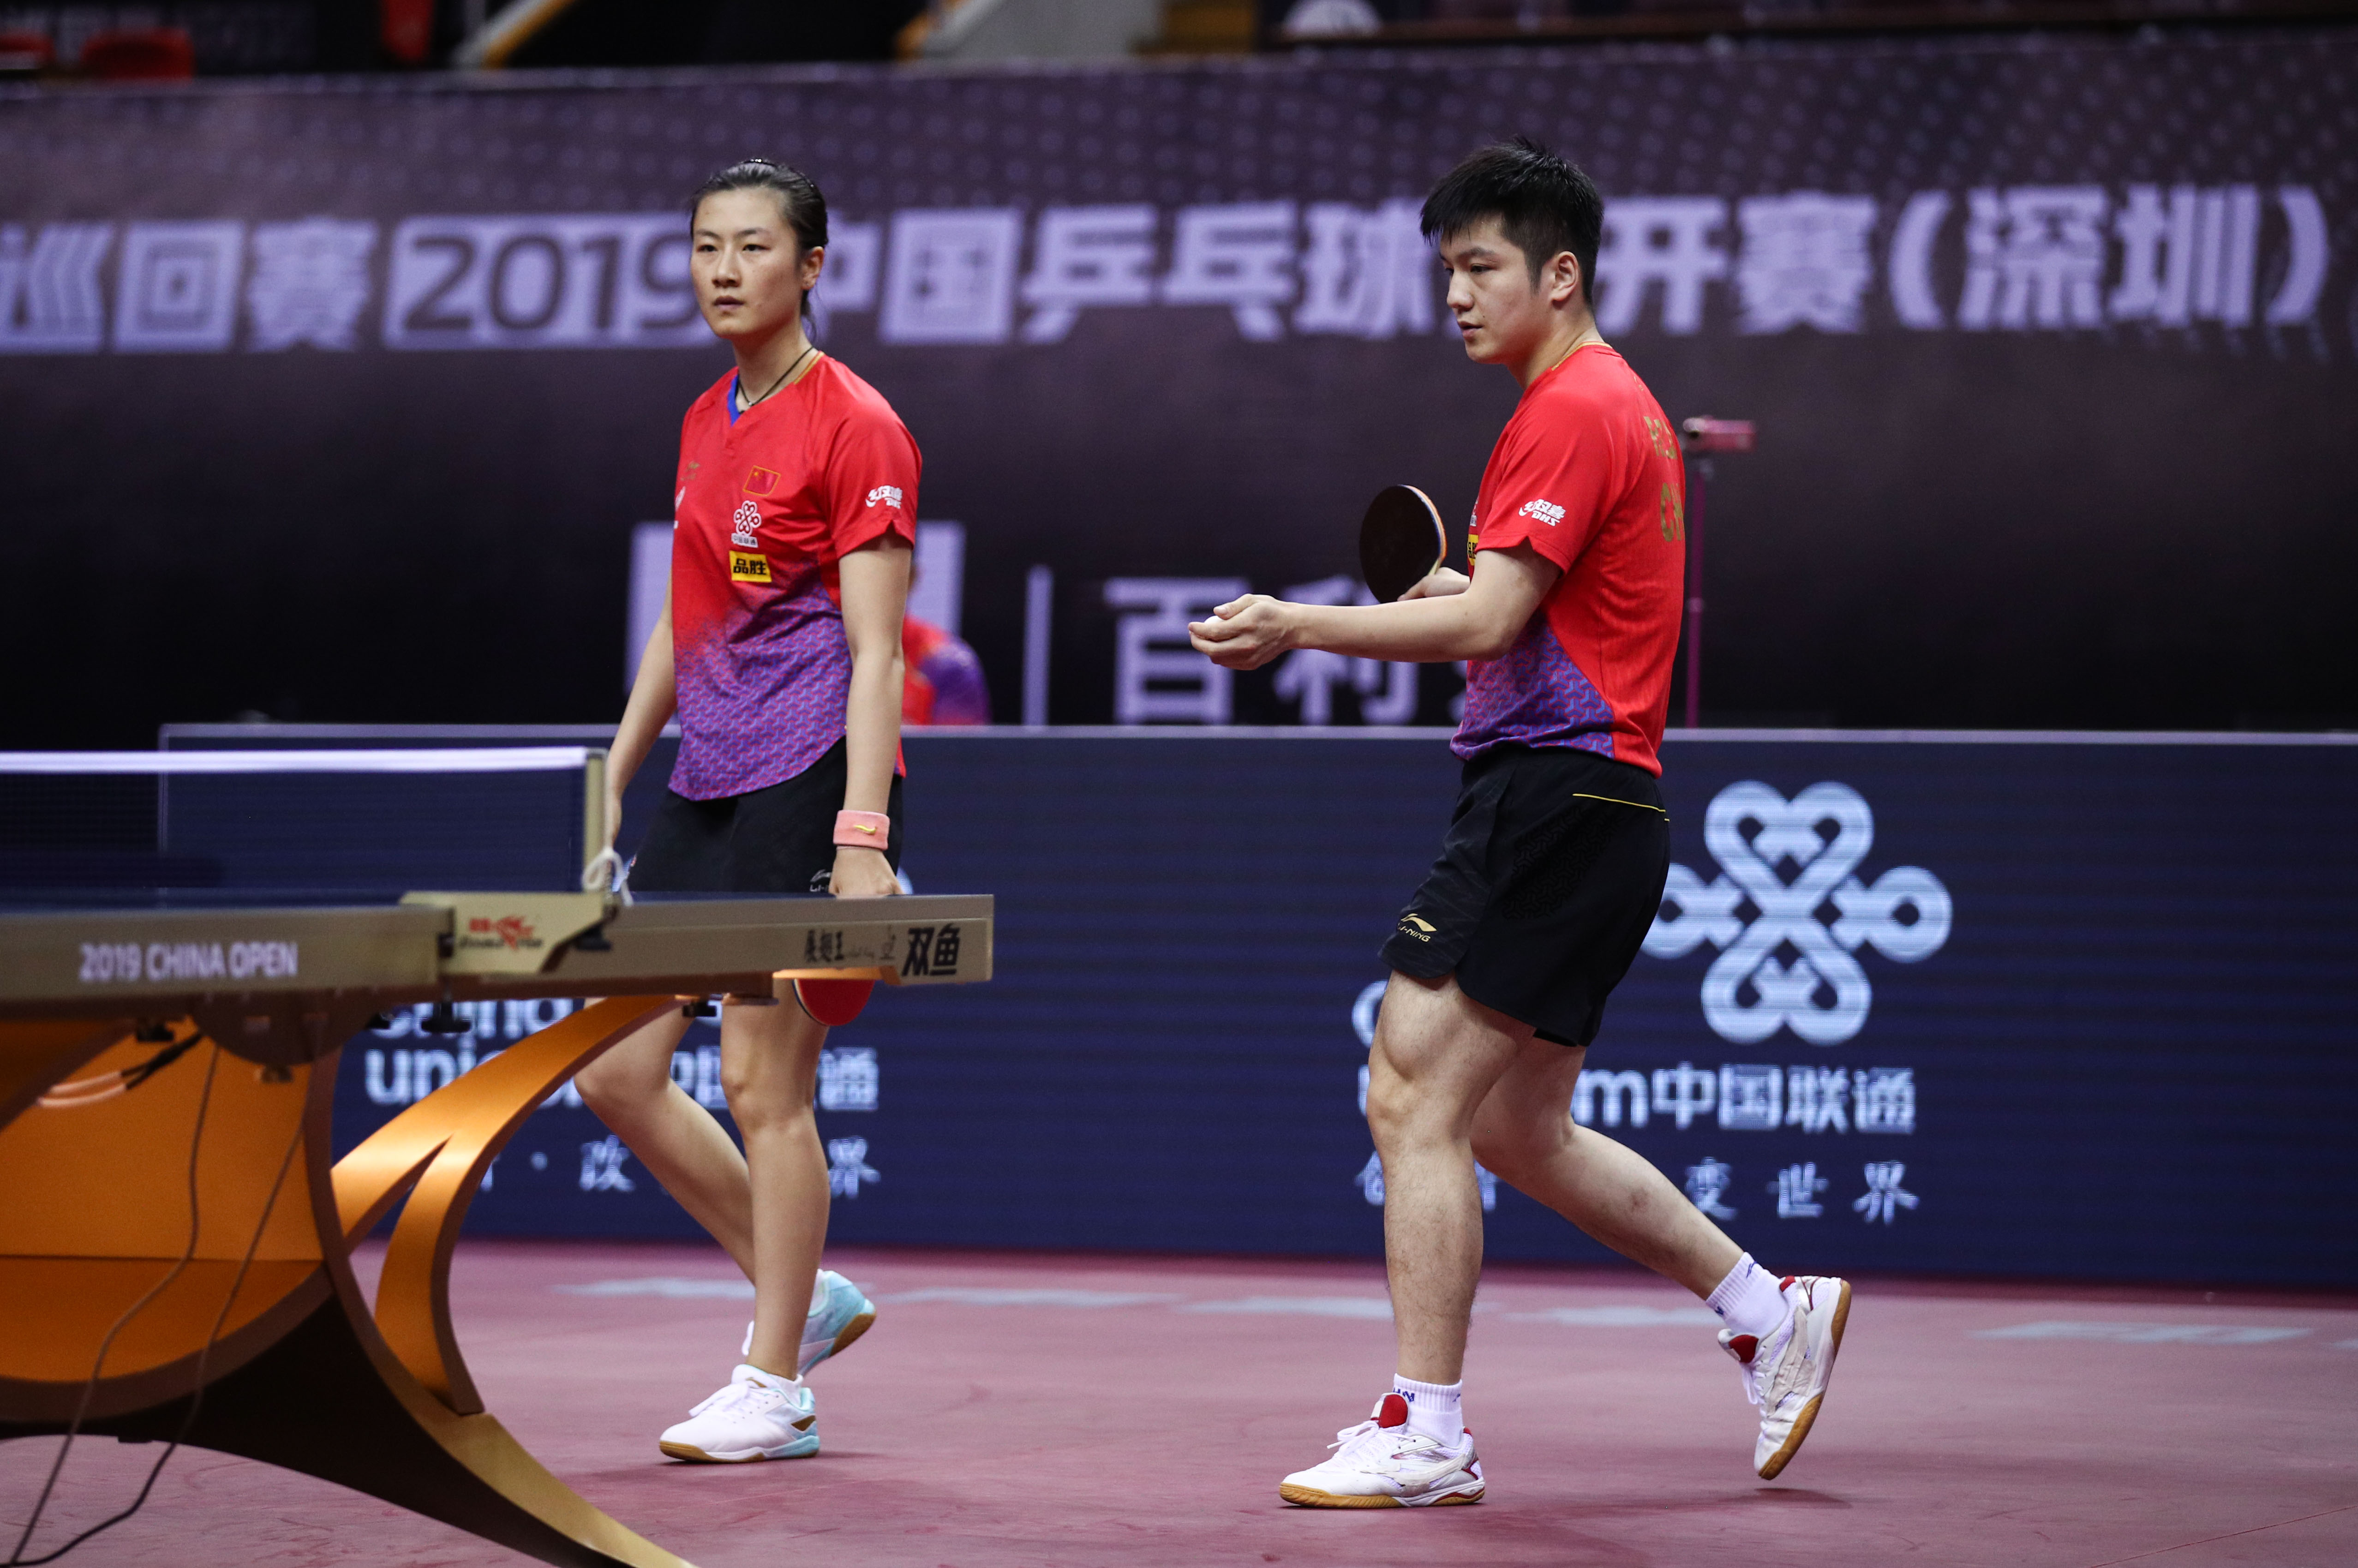 当日,在深圳进行的国际乒联世界巡回赛2019中国乒乓球公开赛混双资格